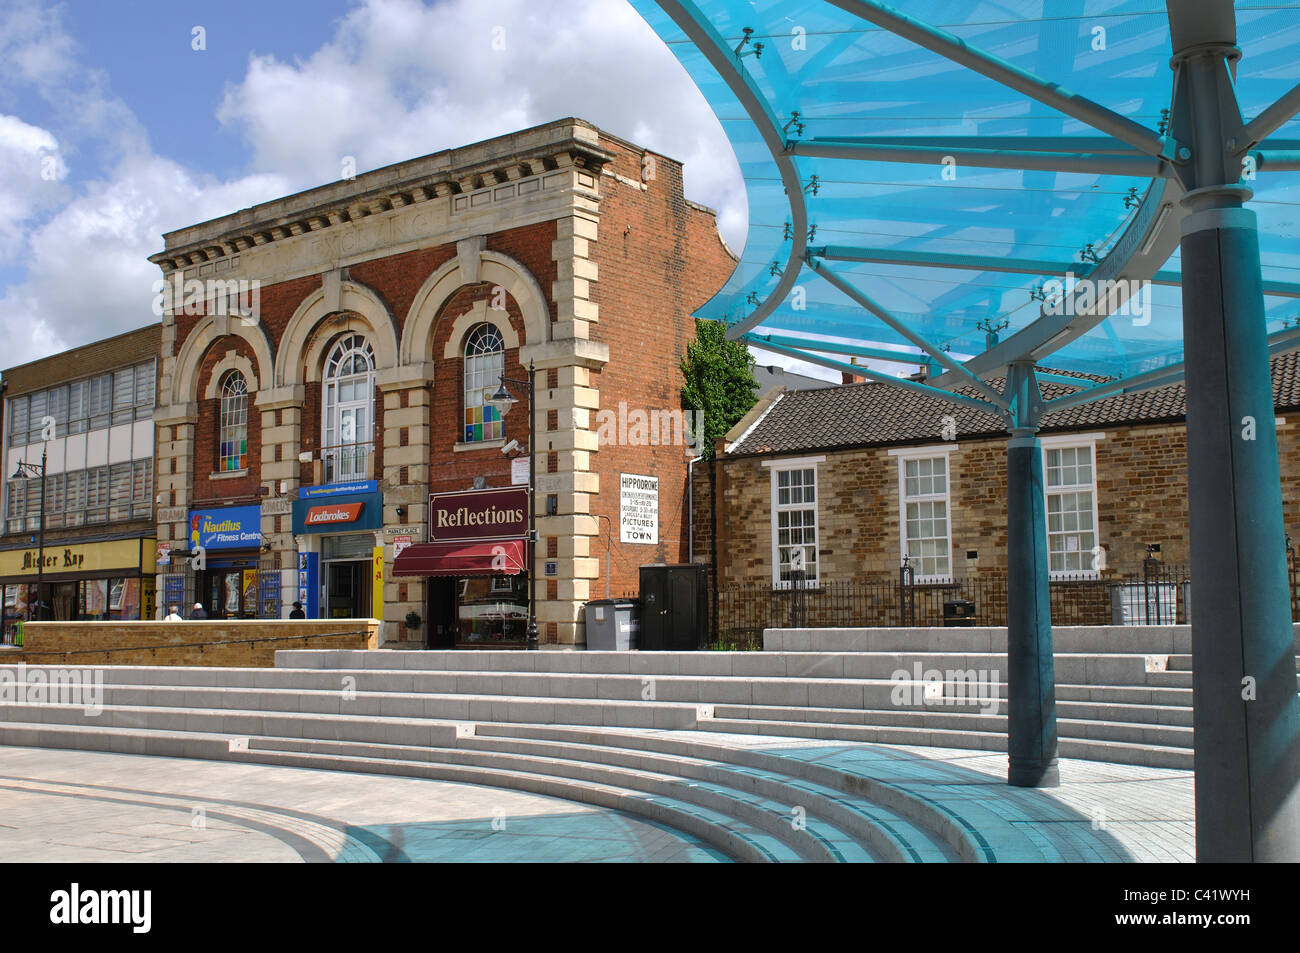 Market Place, Kettering, Northamptonshire, England, UK Stock Photo - Alamy